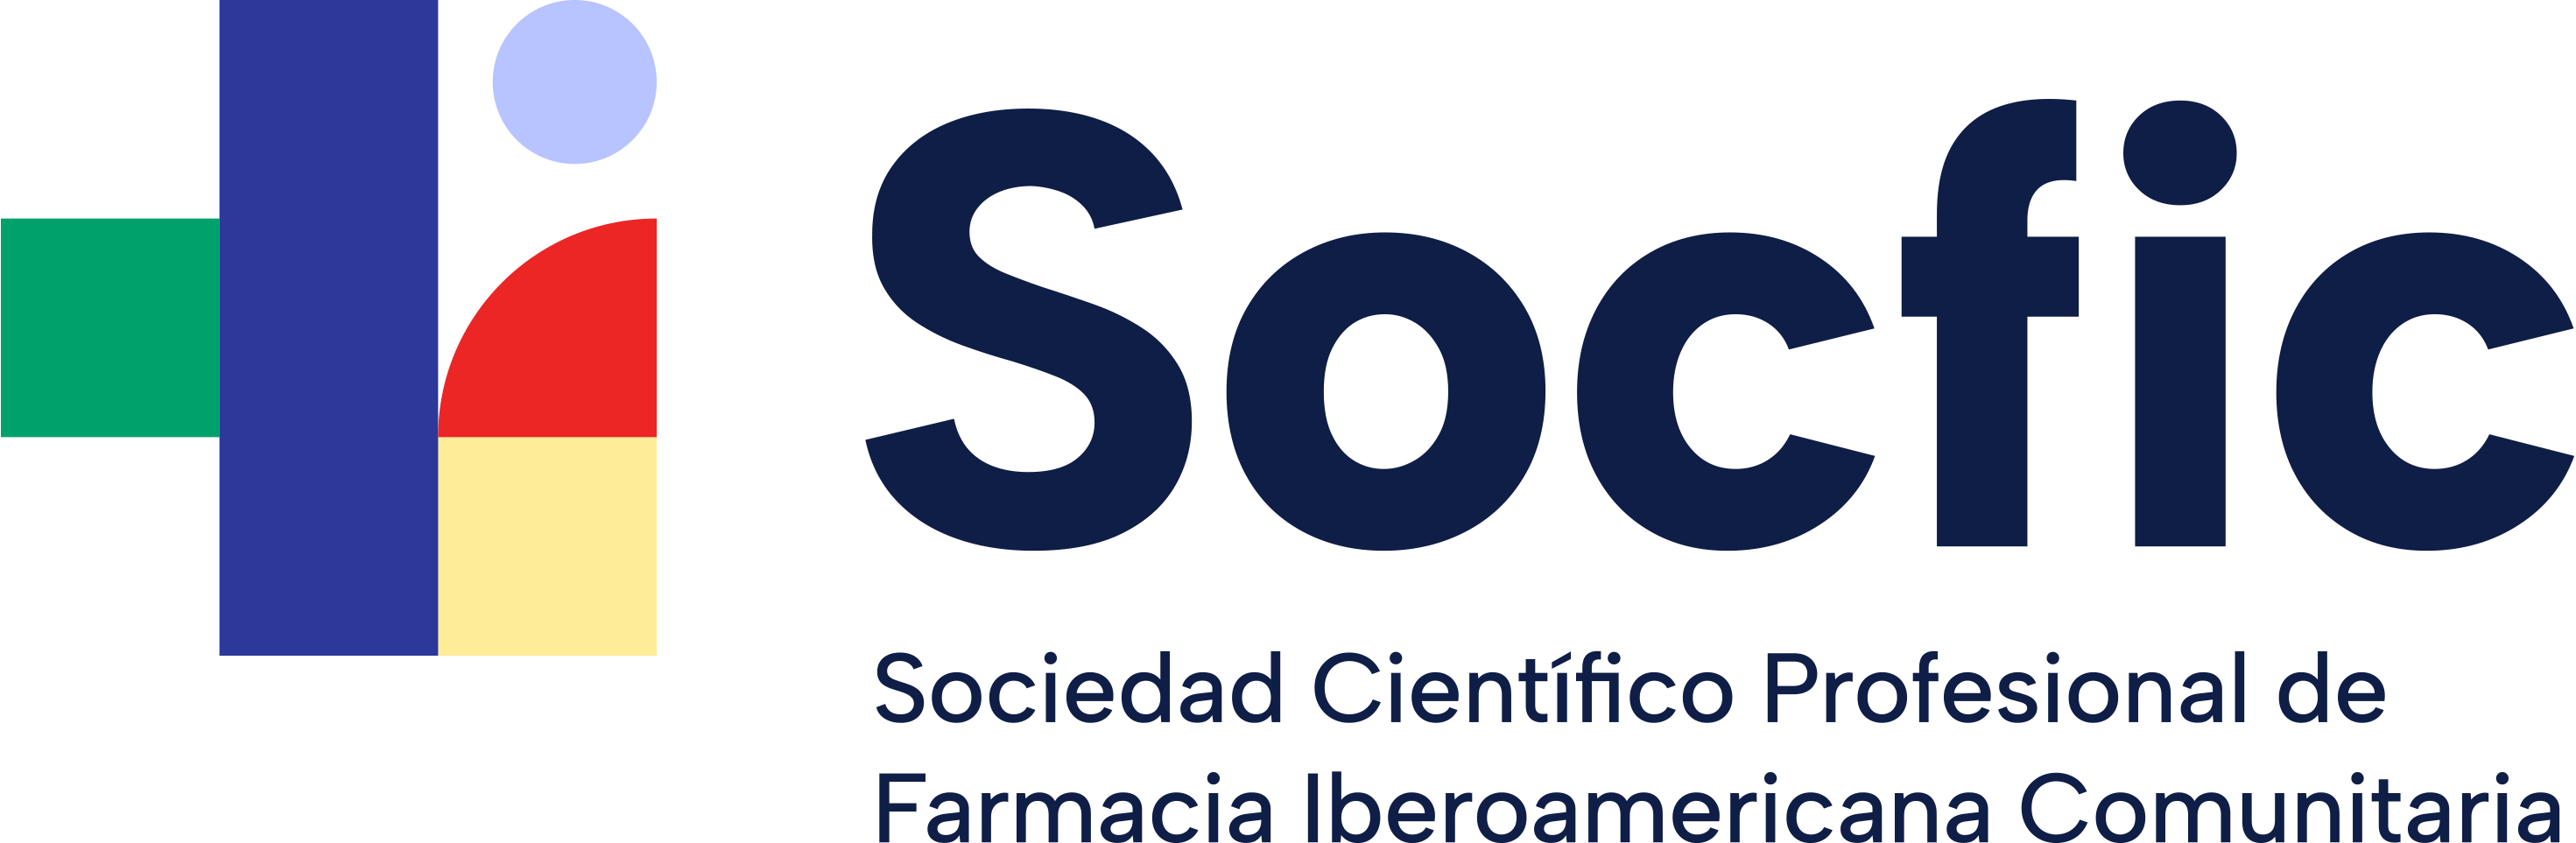 Sociedad Científico Profesional de Farmacia Iberoamericana Comunitaria (SOCFIC) - banner